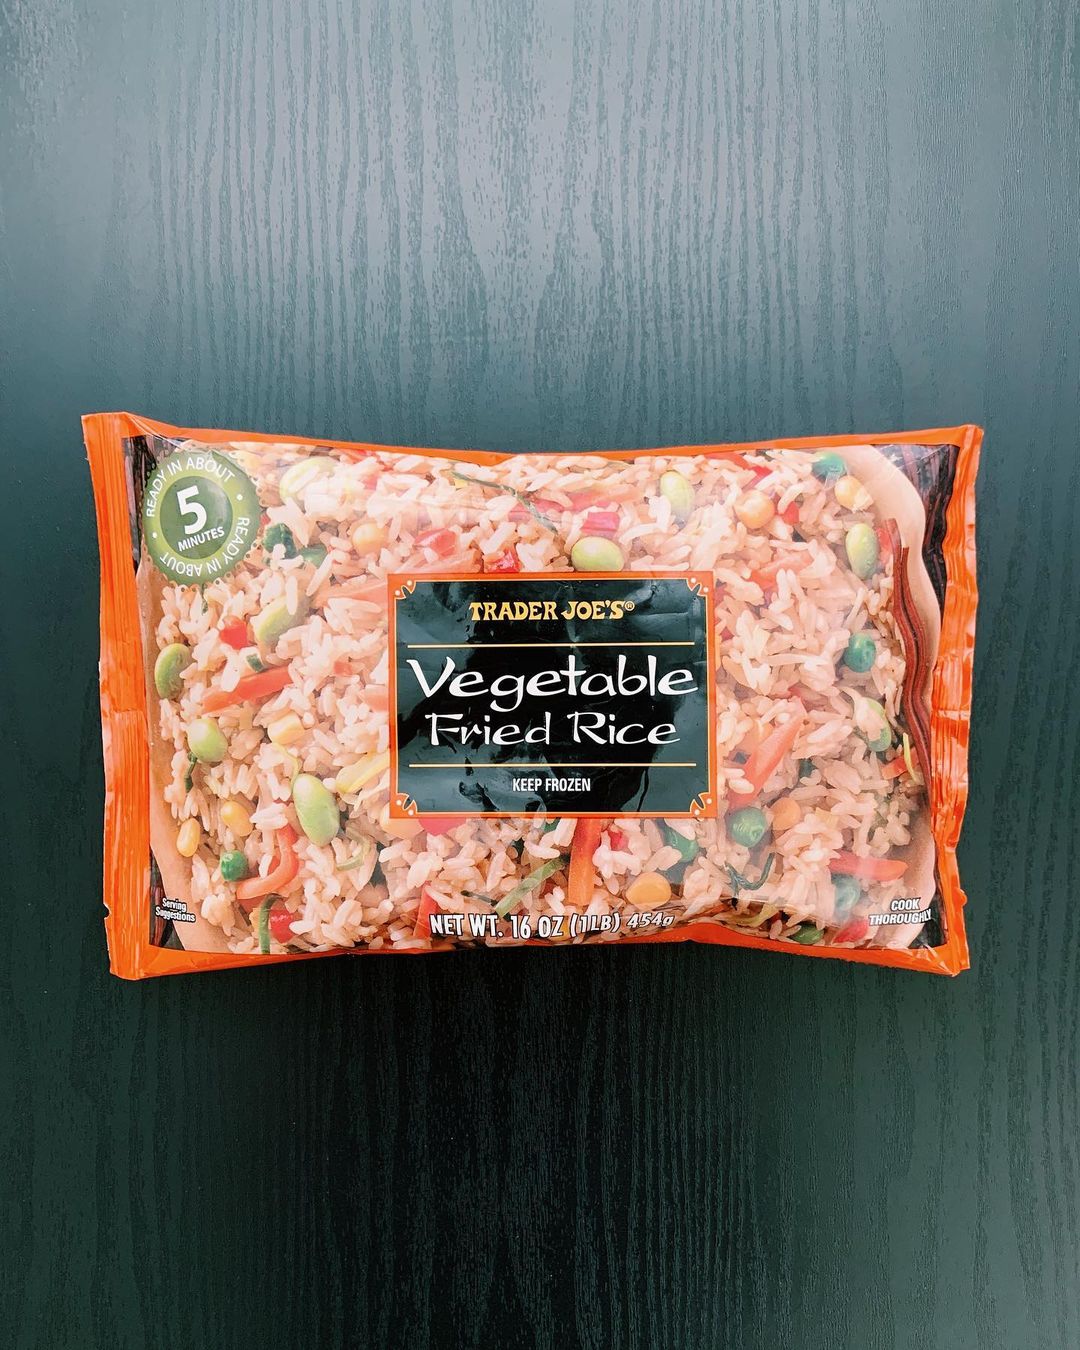 Veggie Fried Rice: 7.5/10

This vegeta...